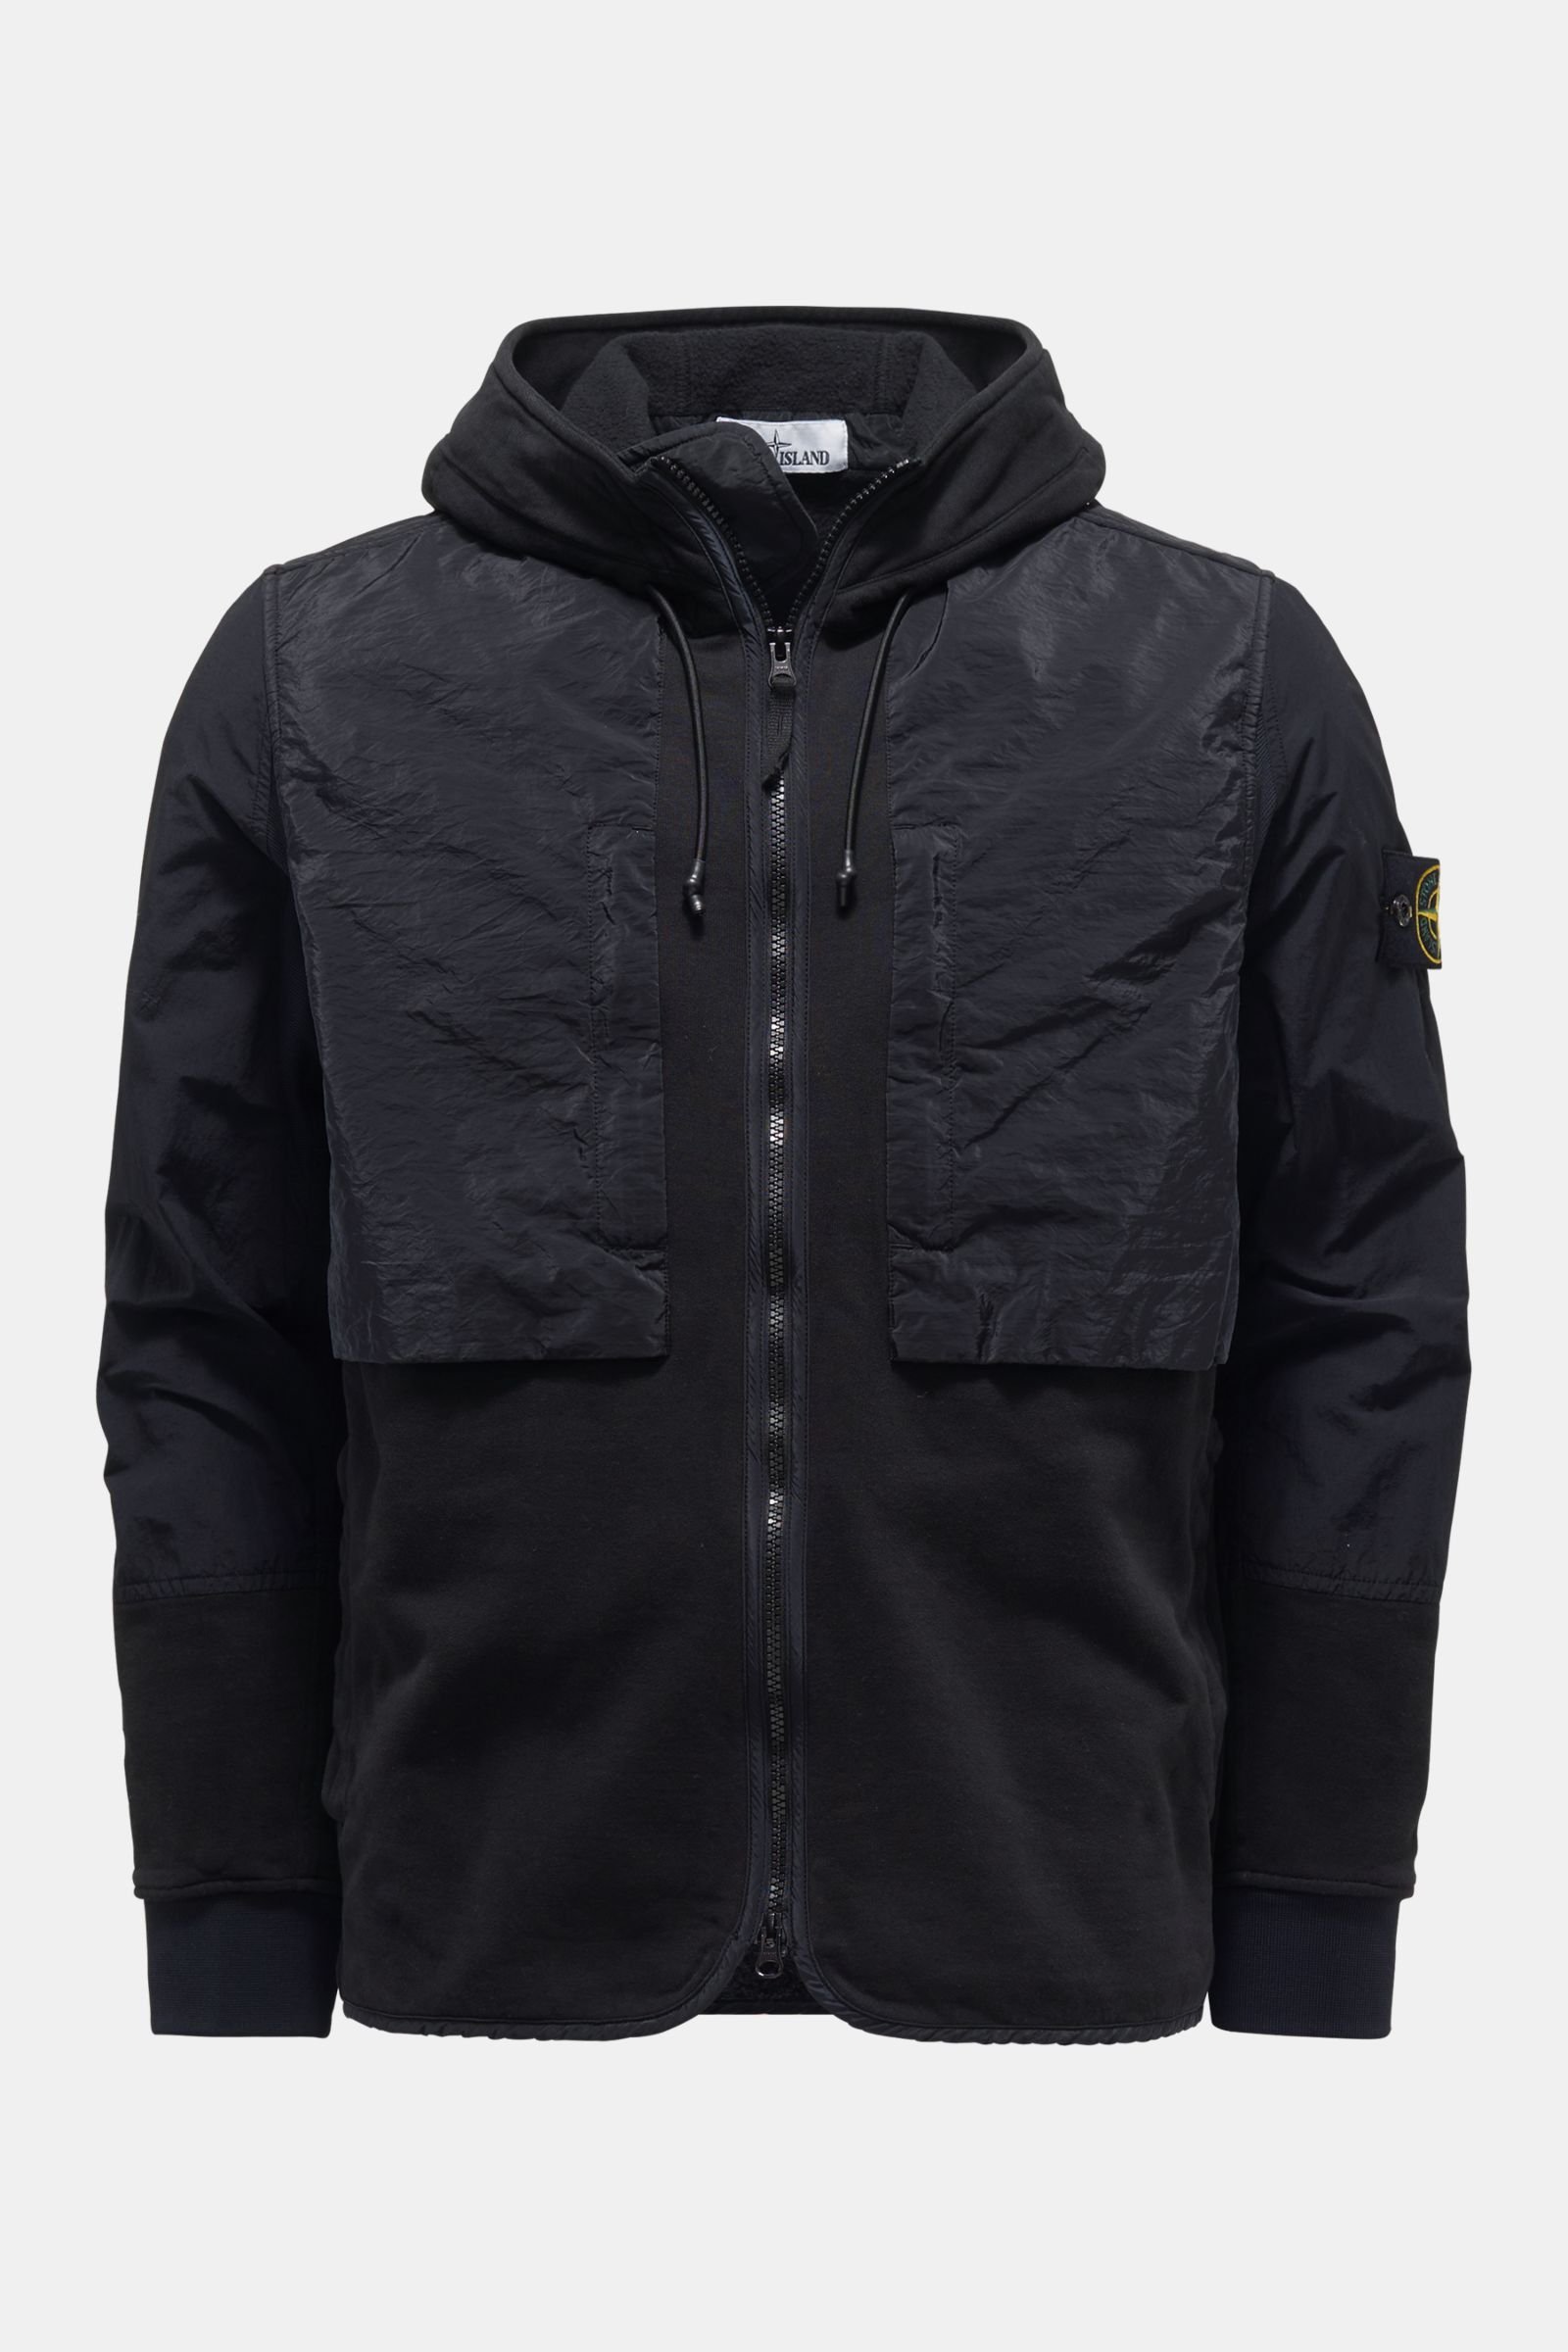 Sweat jacket black/dark navy